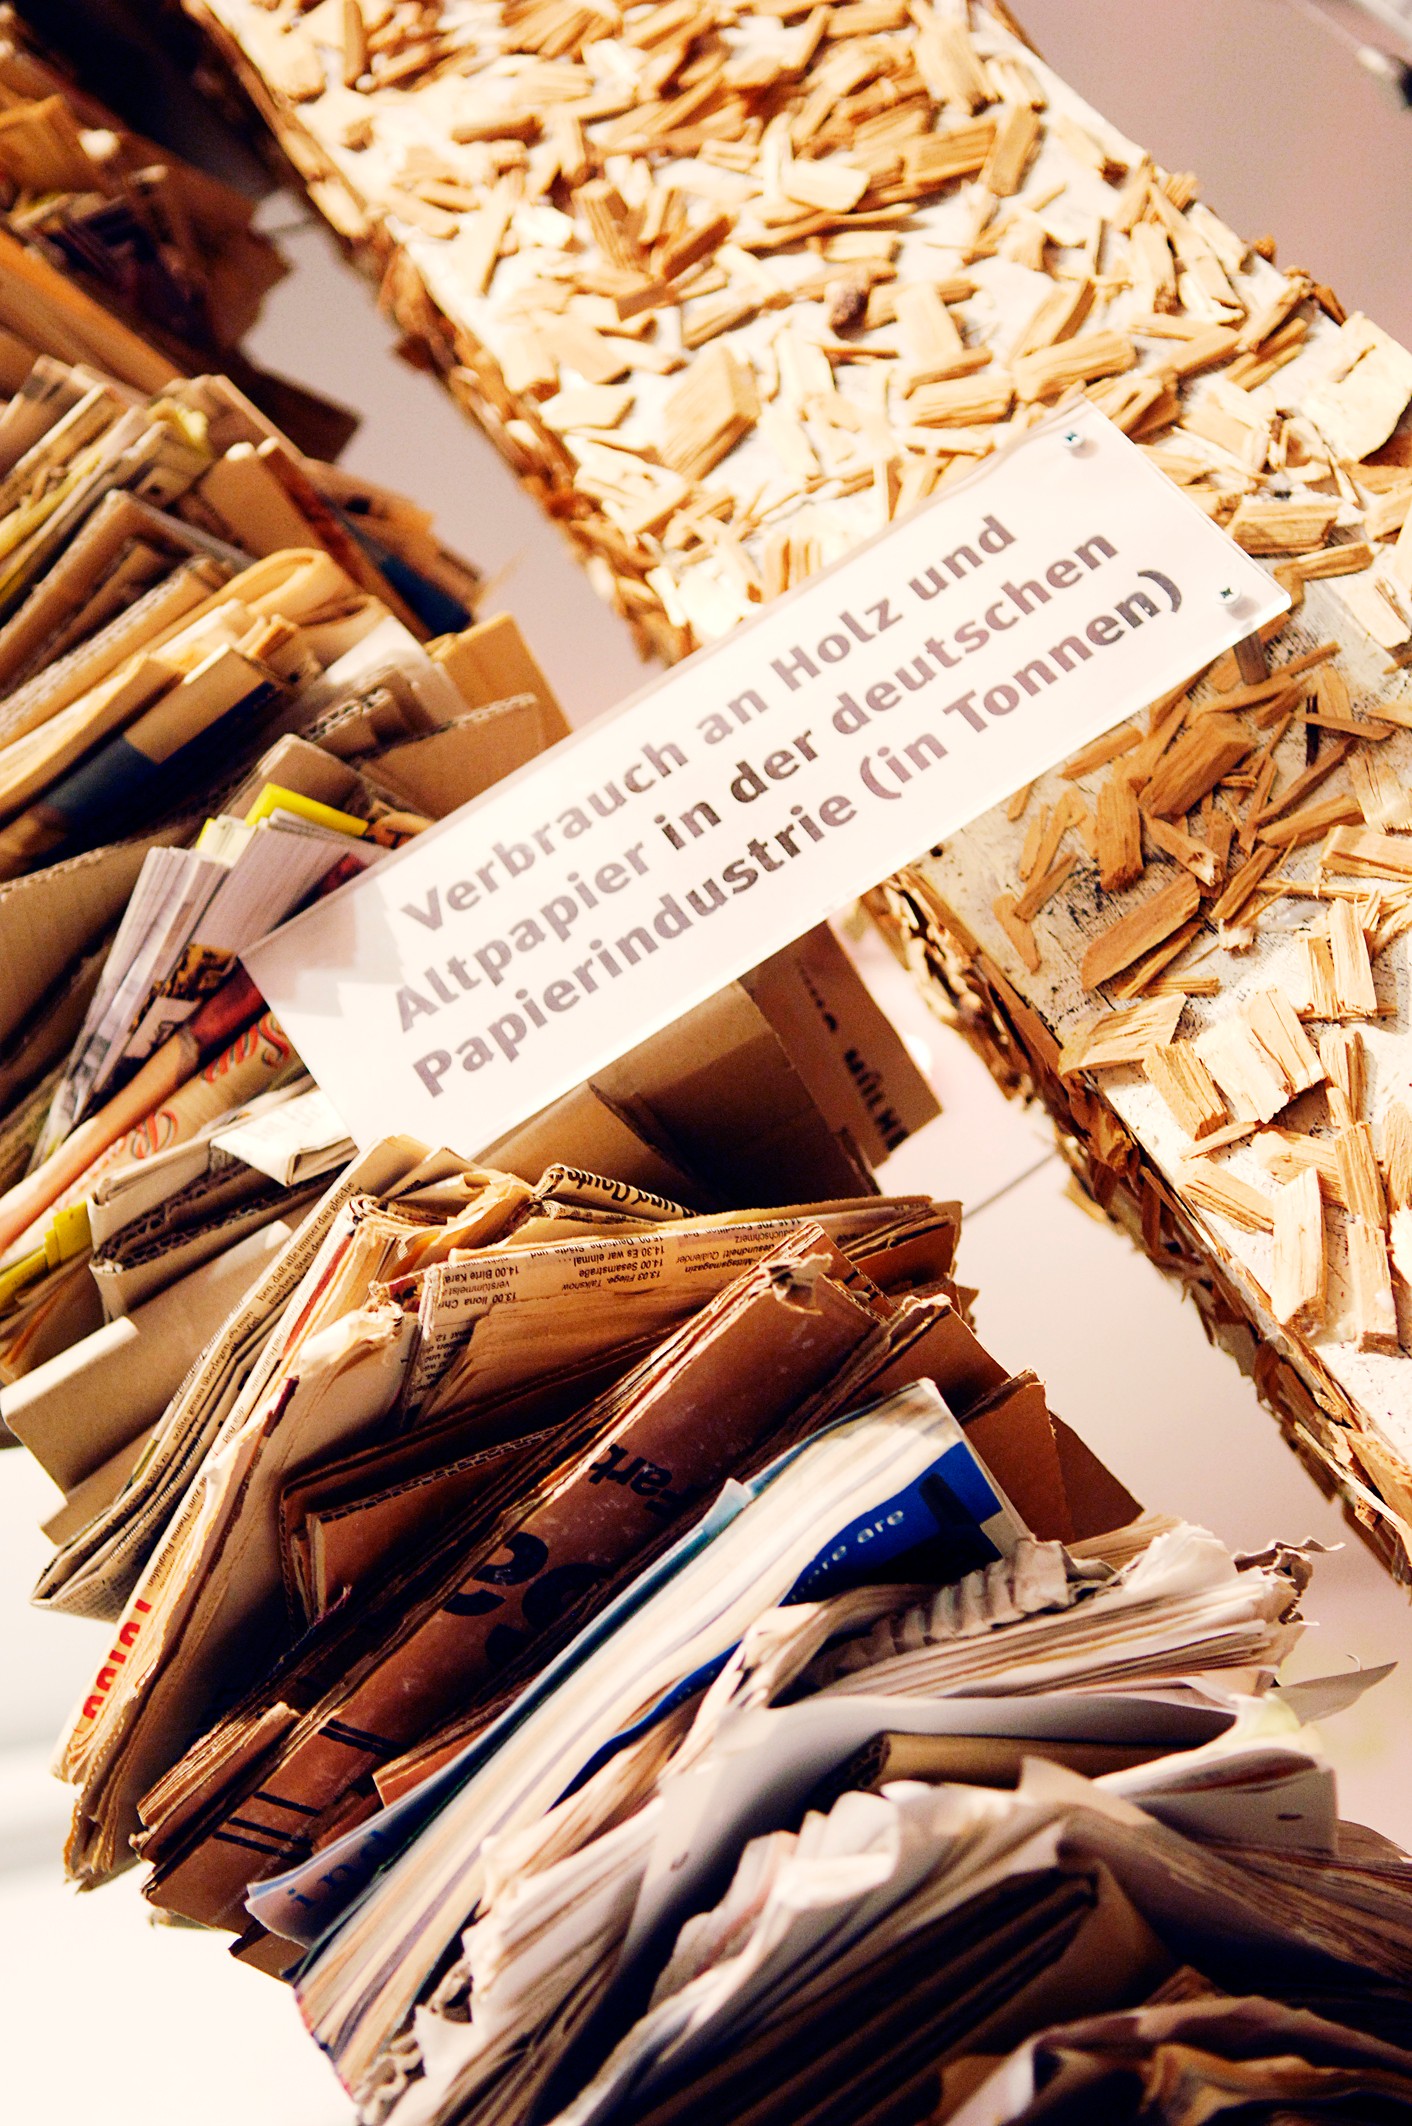 Heute sind Holz, chemisch zu Zellstoff aufbereitet, und Altpapier die wichtigsten Rohstoffe. Obwohl das Recycling inzwischen eine wichtige Rolle spielt, ist der Holzverbrauch wegen der großen Produktionsmengen ein ökologisches Problem.